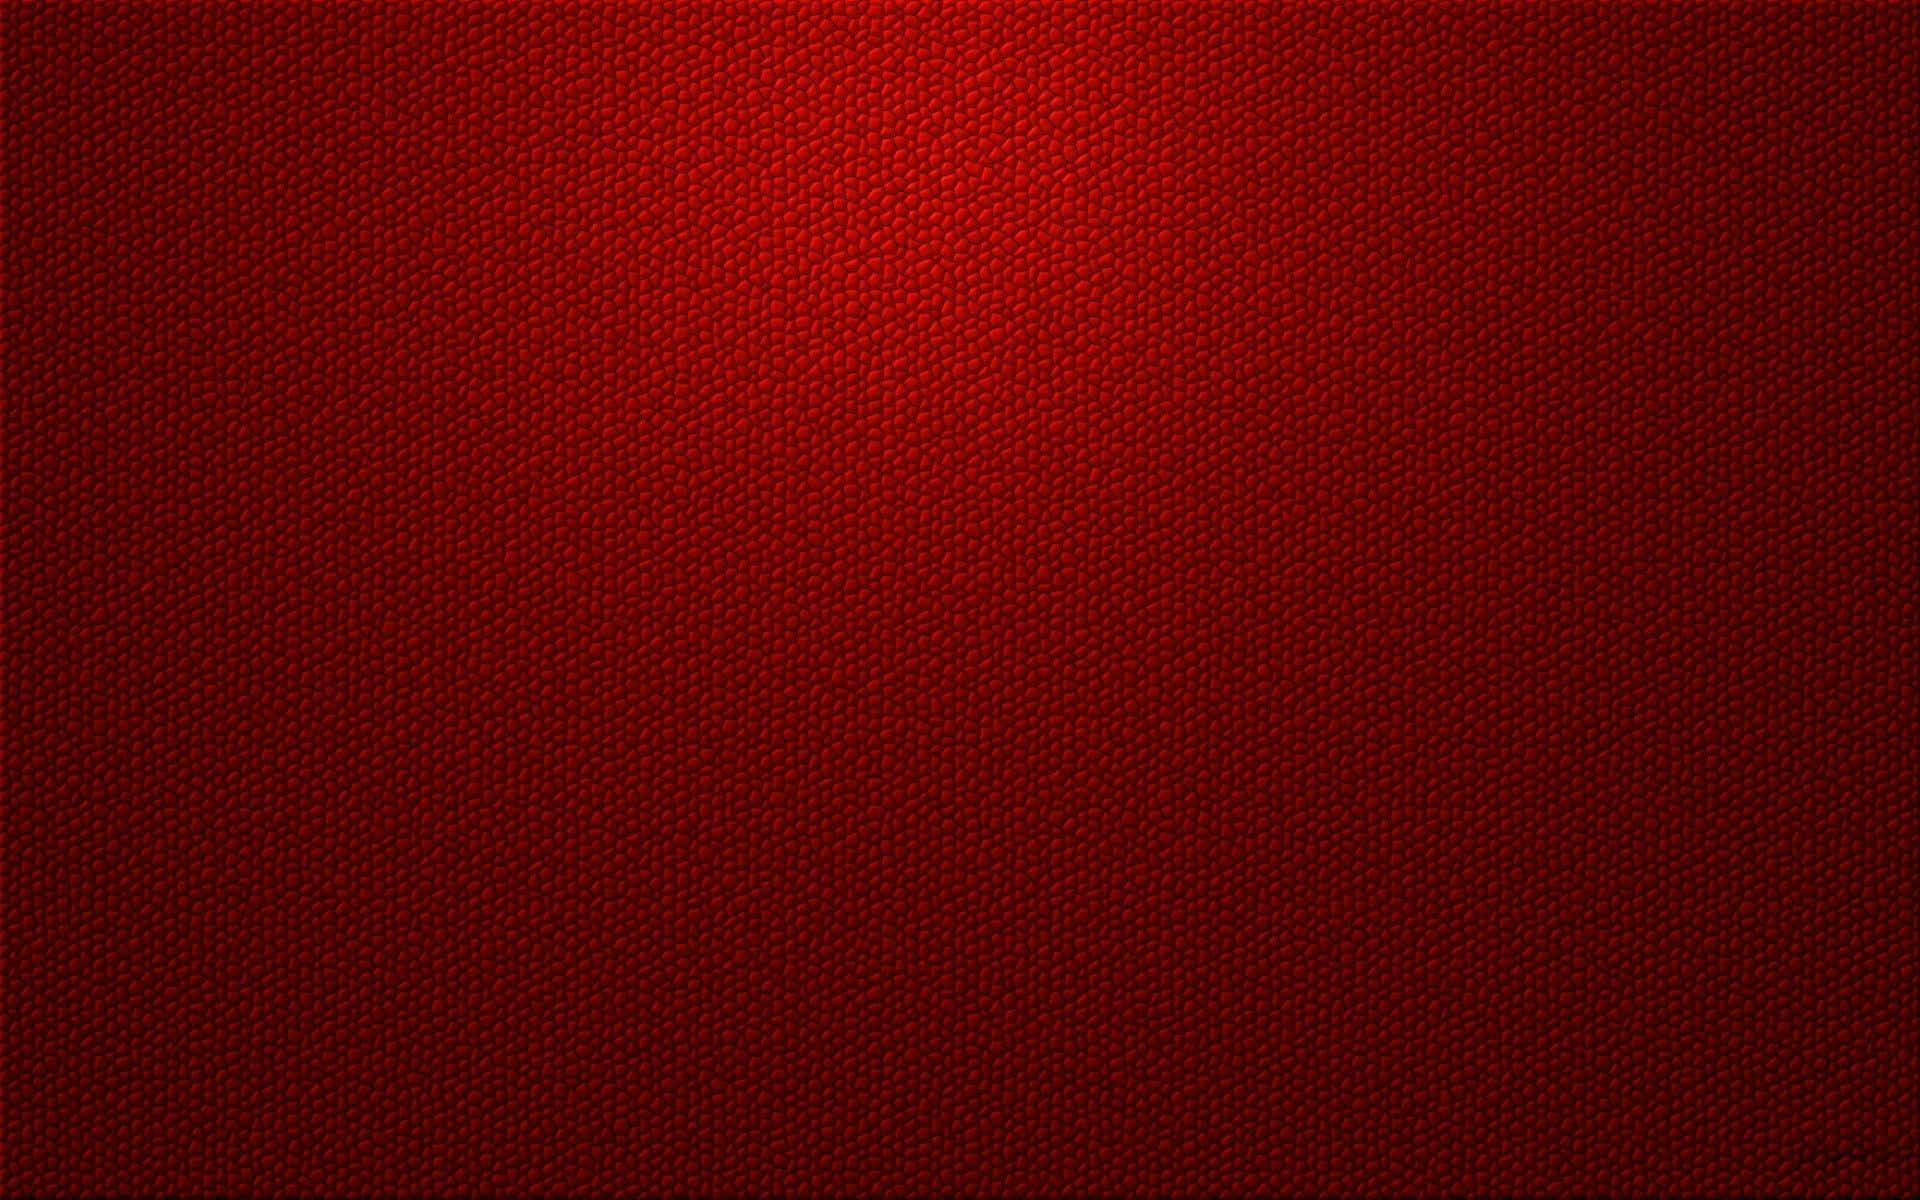 Imagende Fondo Rojo Oscuro Con Textura Roja